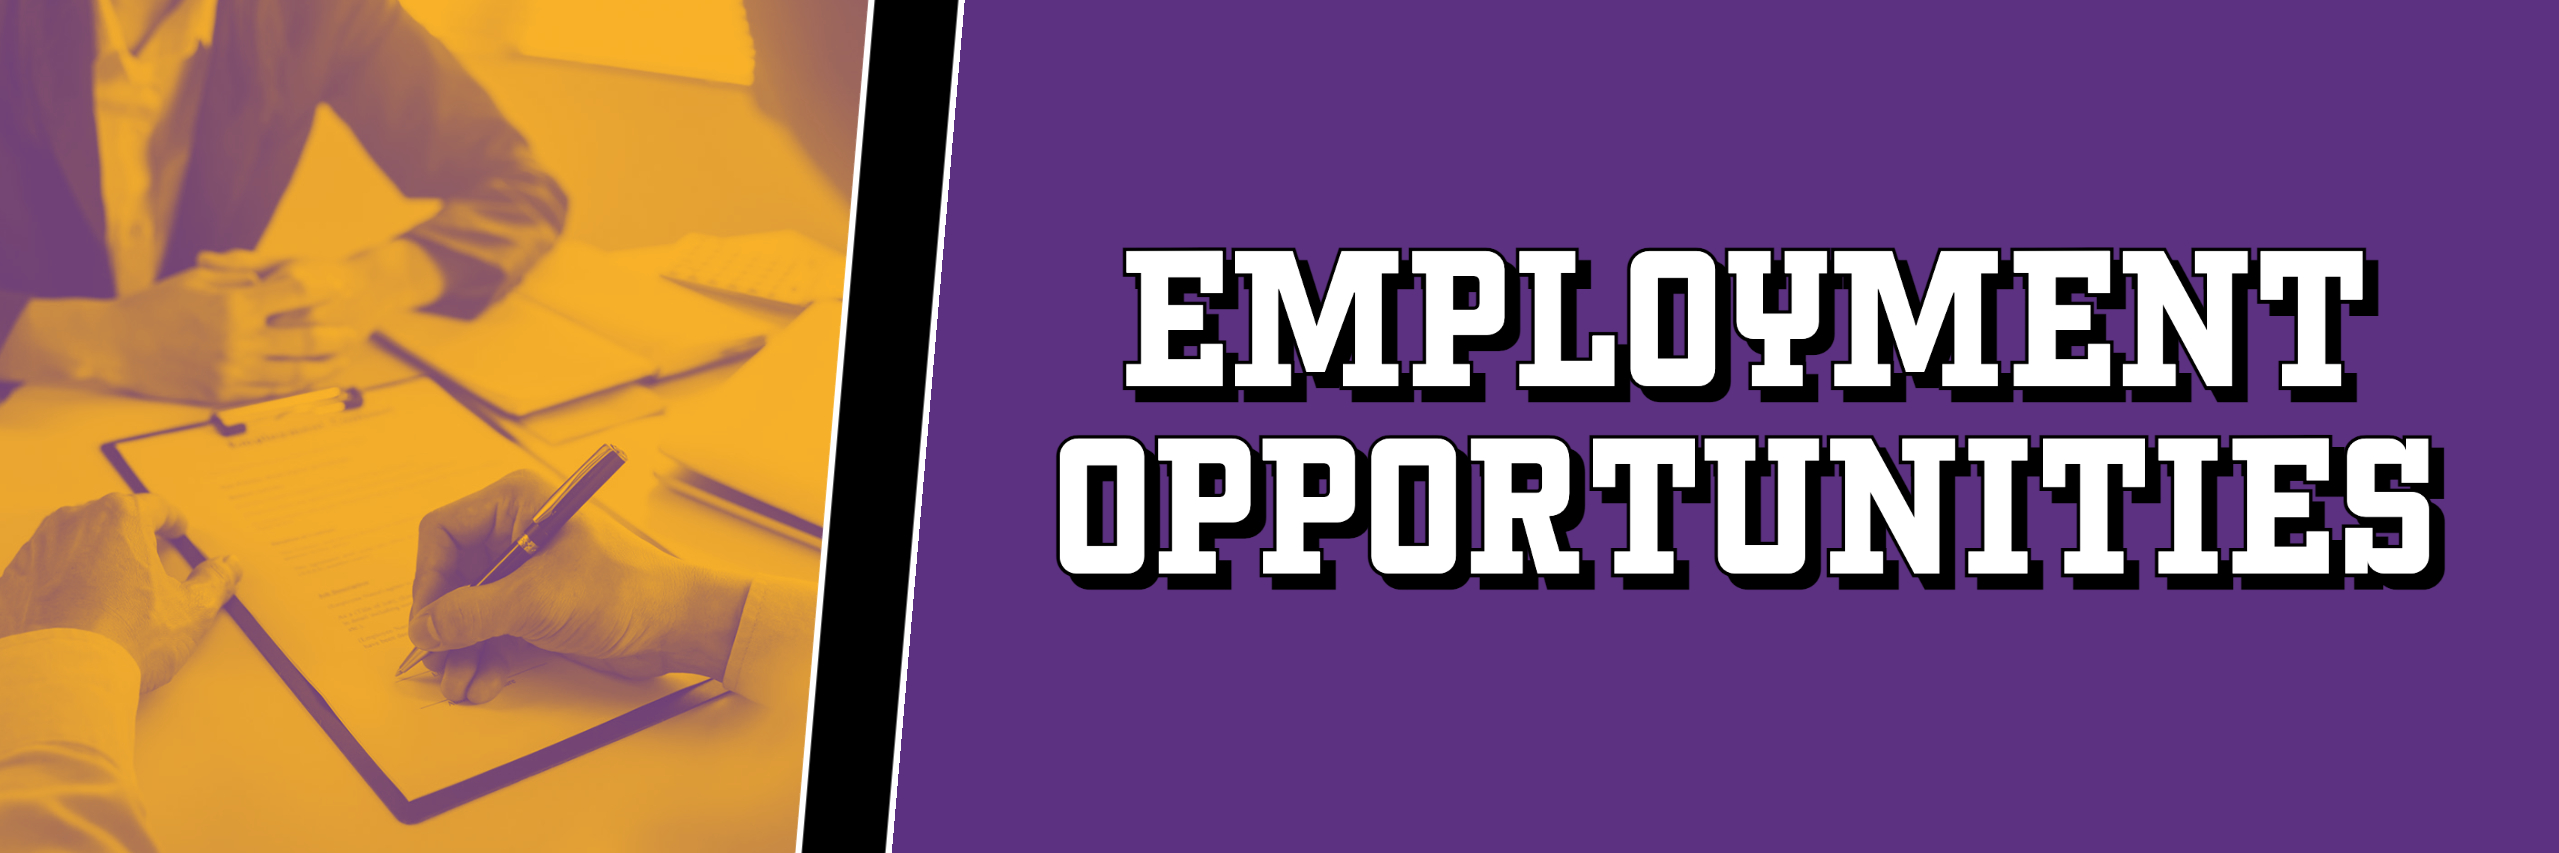 employment opportunities banner